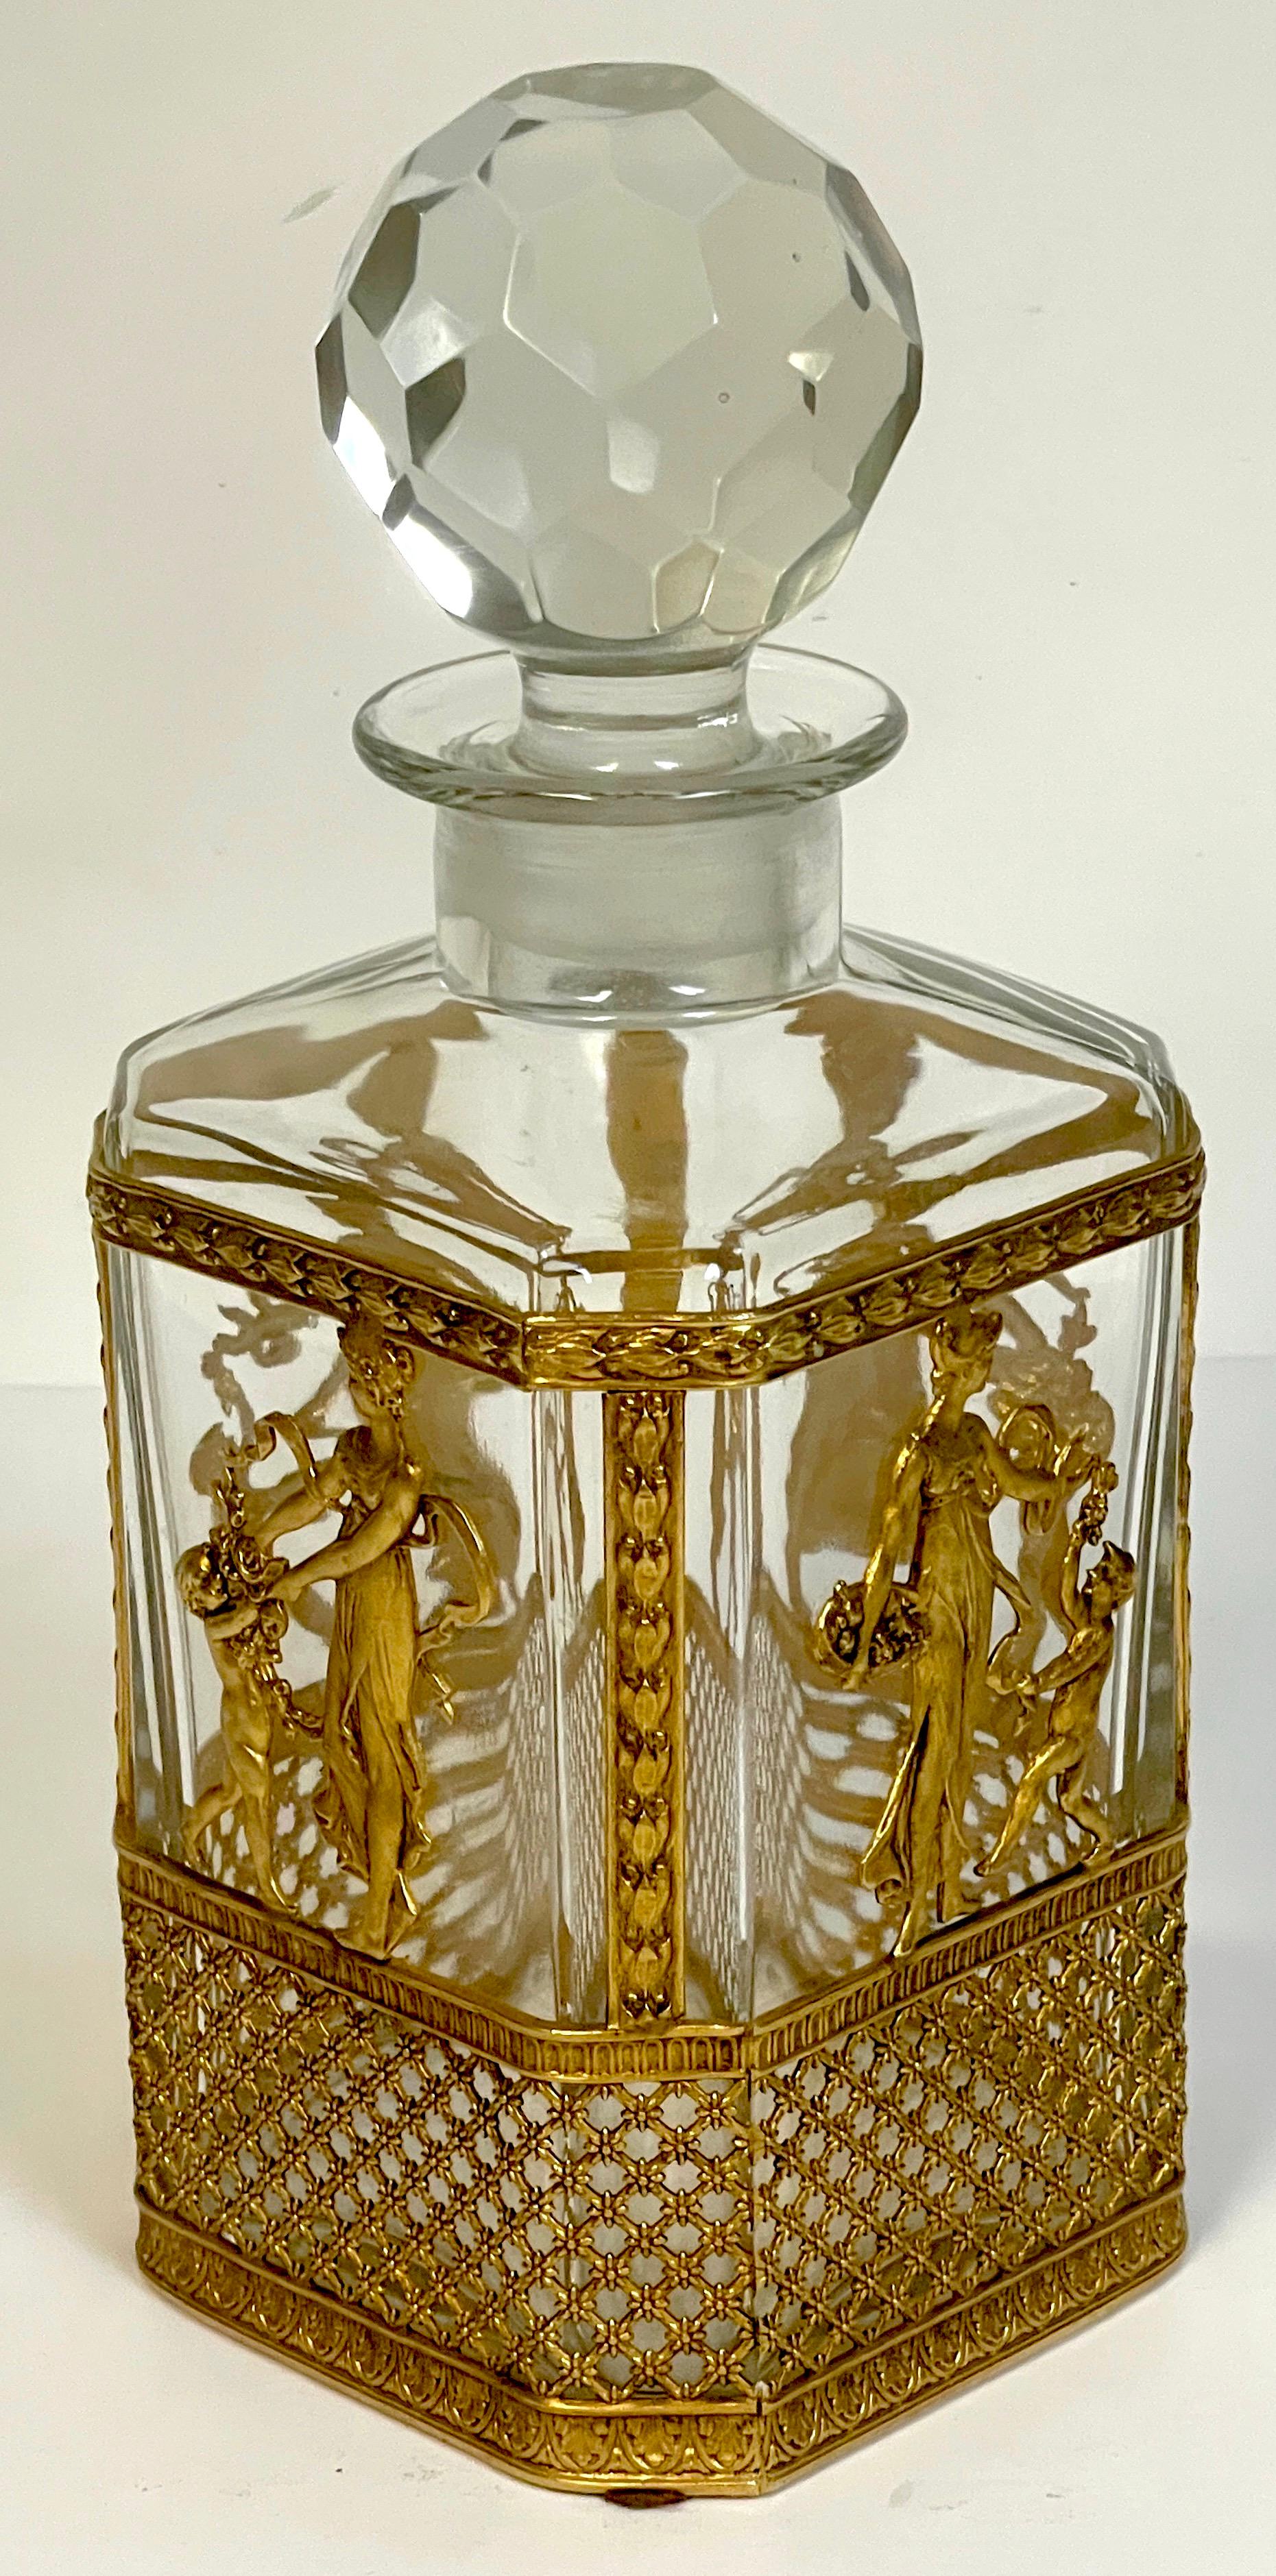 Carafe Empire de style Baccarat montée en ormolu, un exemple exquis, avec bouchon à facettes, la bouteille équipée d'une vignette classique allégorique à quatre panneaux finement moulée et dorée. D'une hauteur de 10 pouces et d'un diamètre carré de